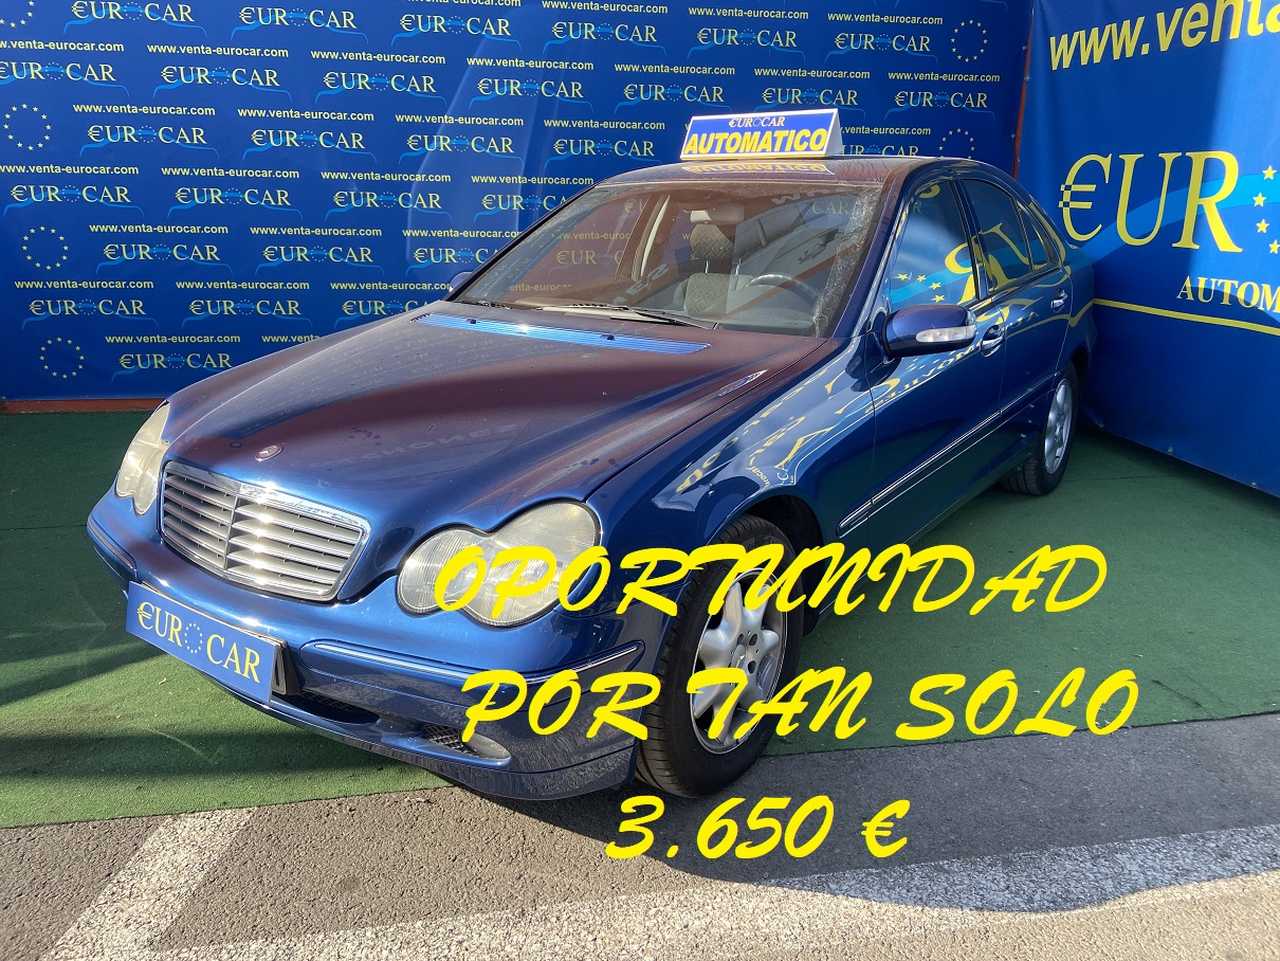 Mercedes Benz Clase C ocasión segunda mano 2000 Diésel por 3.650€ en Alicante